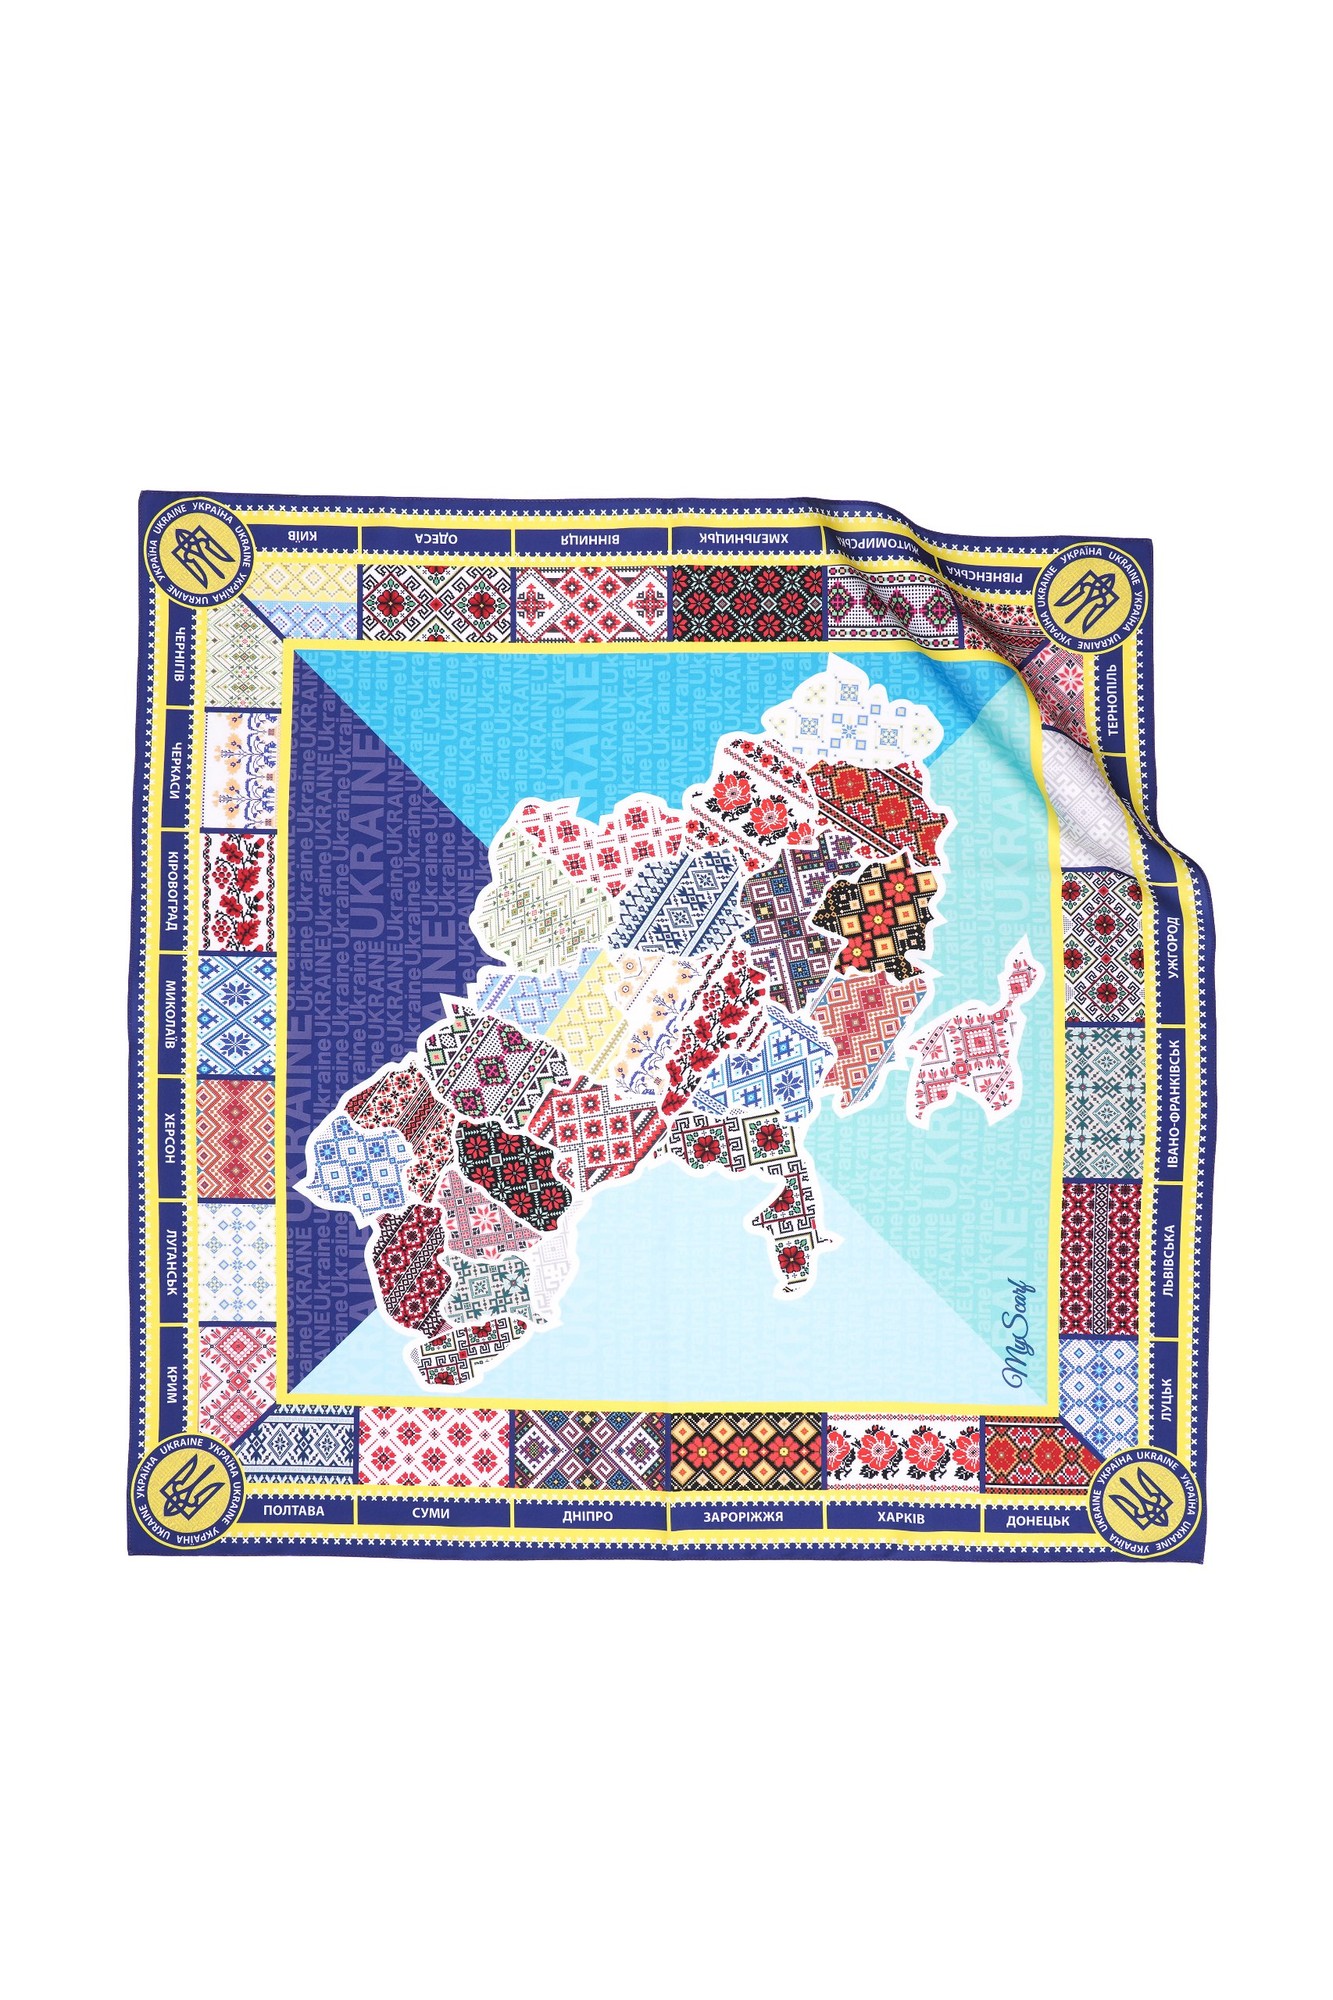 Designer  scarf "Ukrainian  map ,, ,  from the designer Art Sana